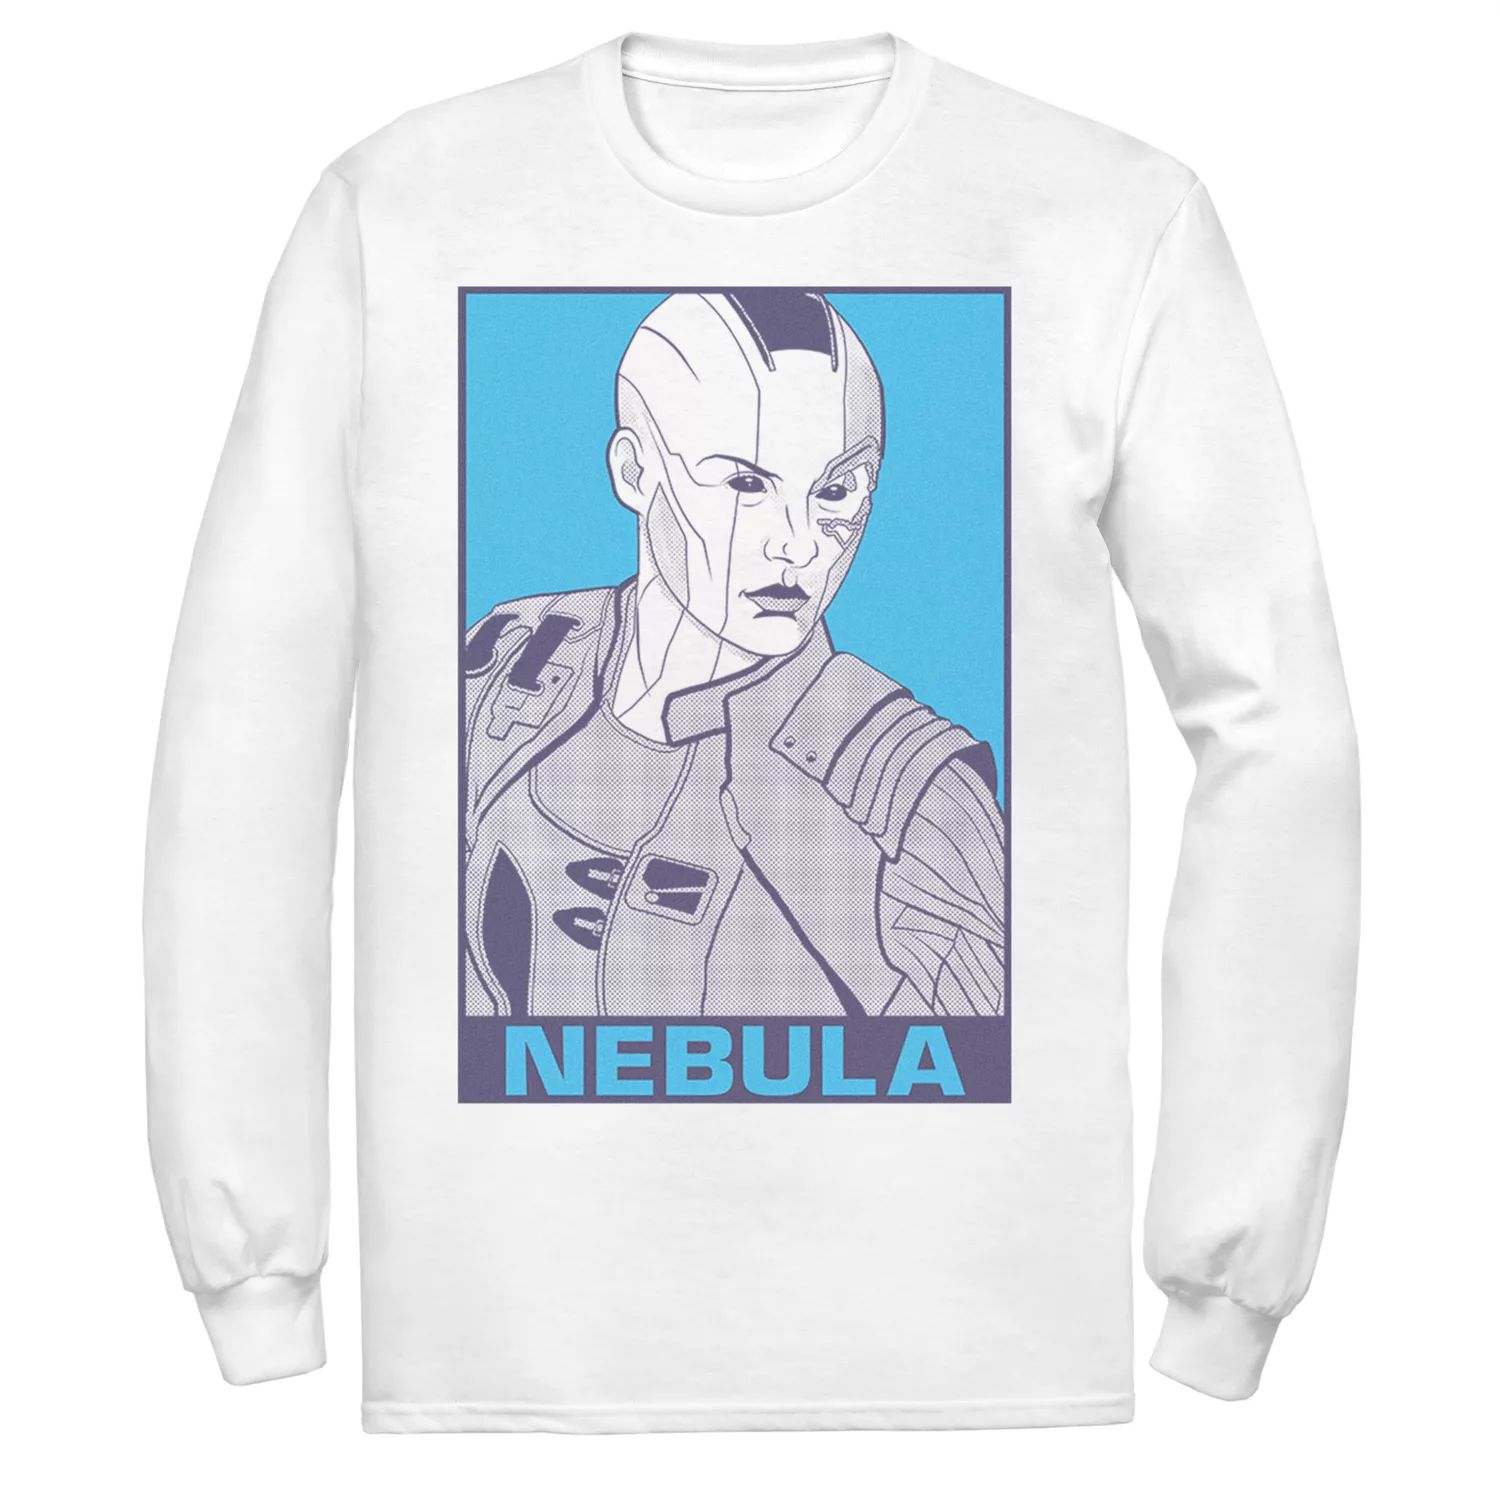 Мужская футболка с плакатом в стиле поп-арт Marvel Nebula Licensed Character